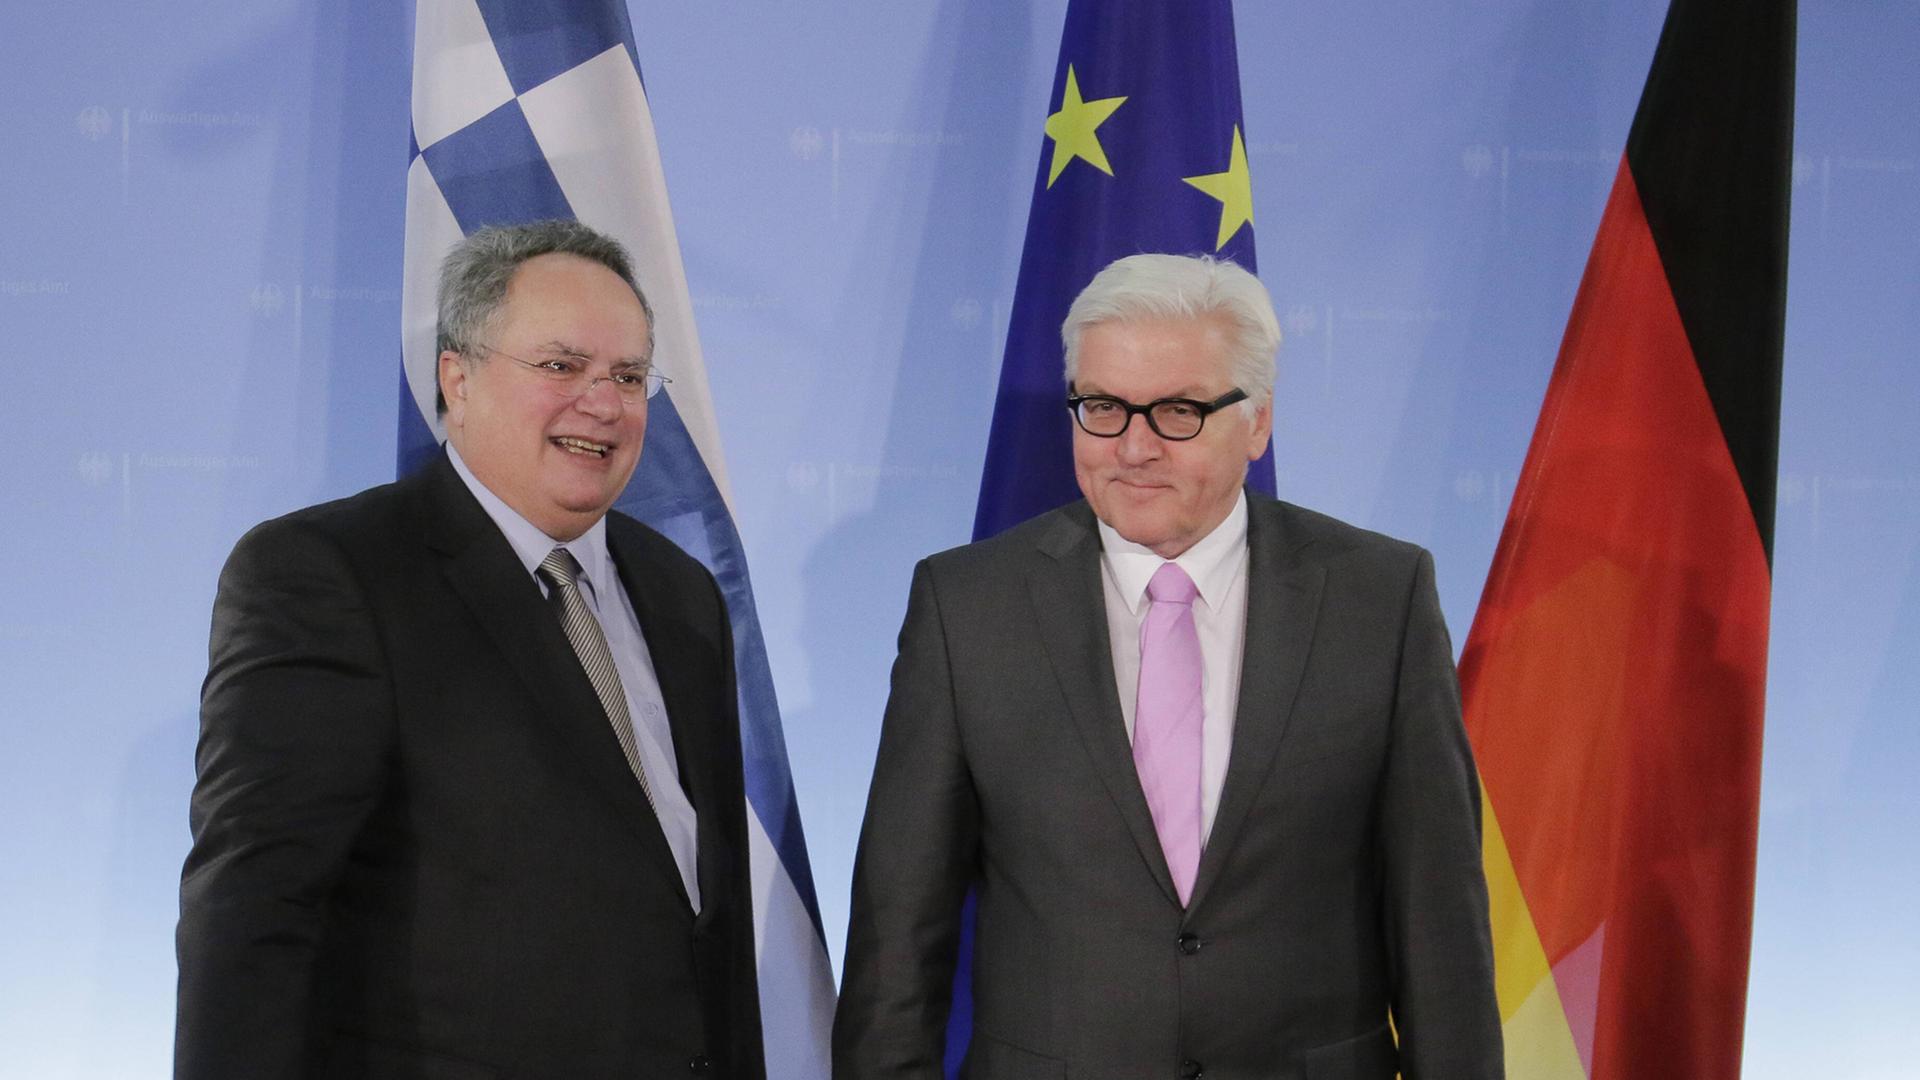 Bundesaußenminister Frank-Walter Steinmeier (SPD) und sein griechischer Amtskollege Nikos Kotzias schütteln für die Fotografen Hände.